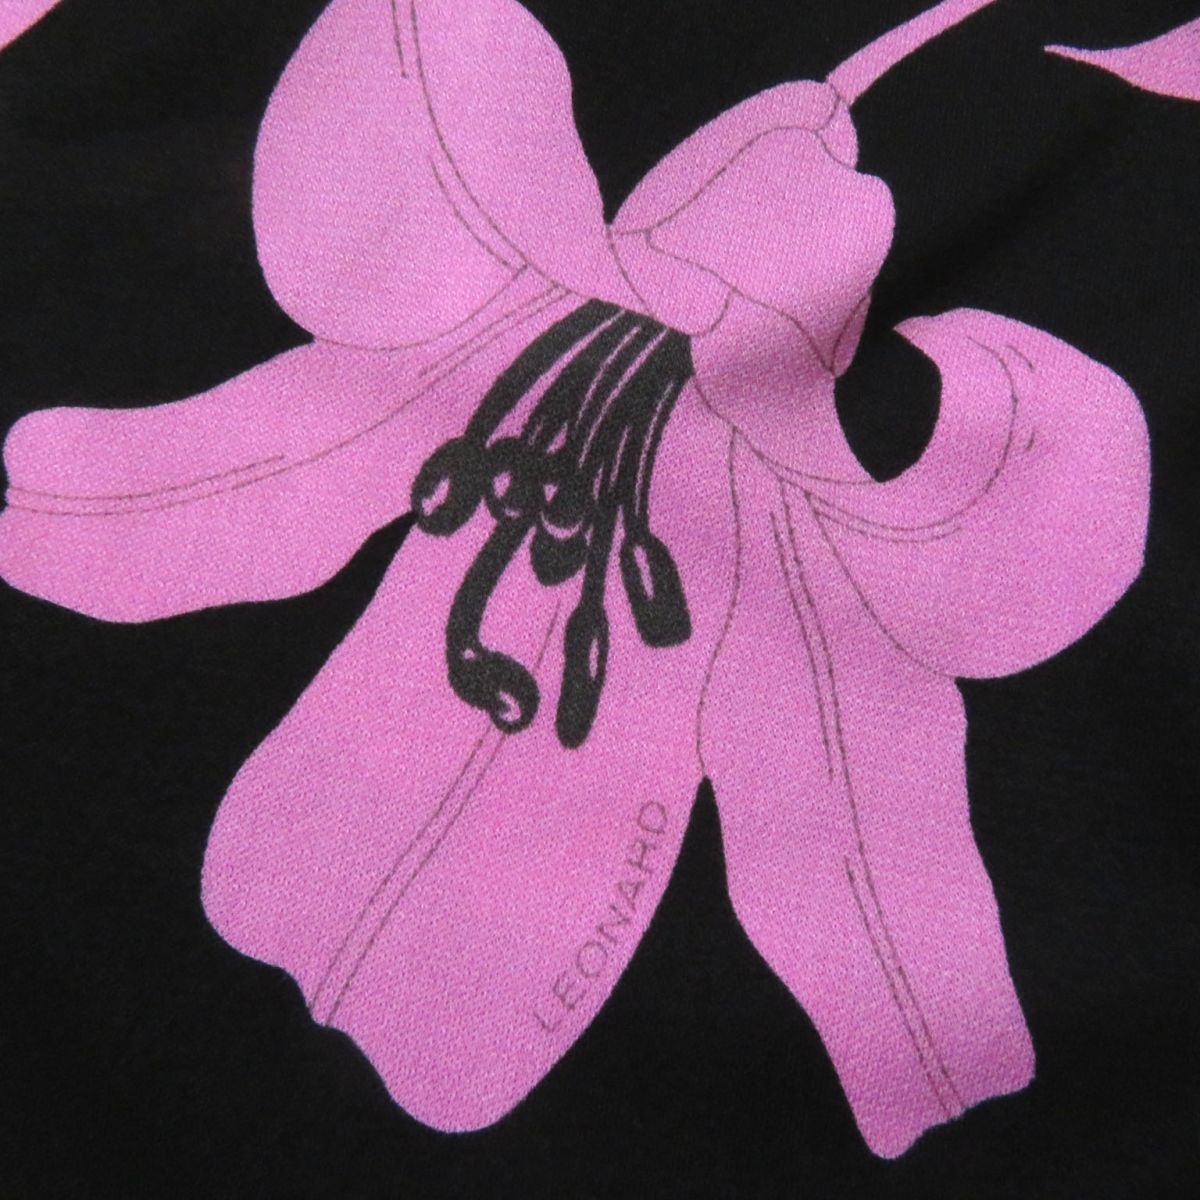 極美◎正規品 日本製 LEONARD FASHION レオナール ファッション 0160226 フロントリボン付 袖シースルー ワンピース 黒×ピンク 花柄 36